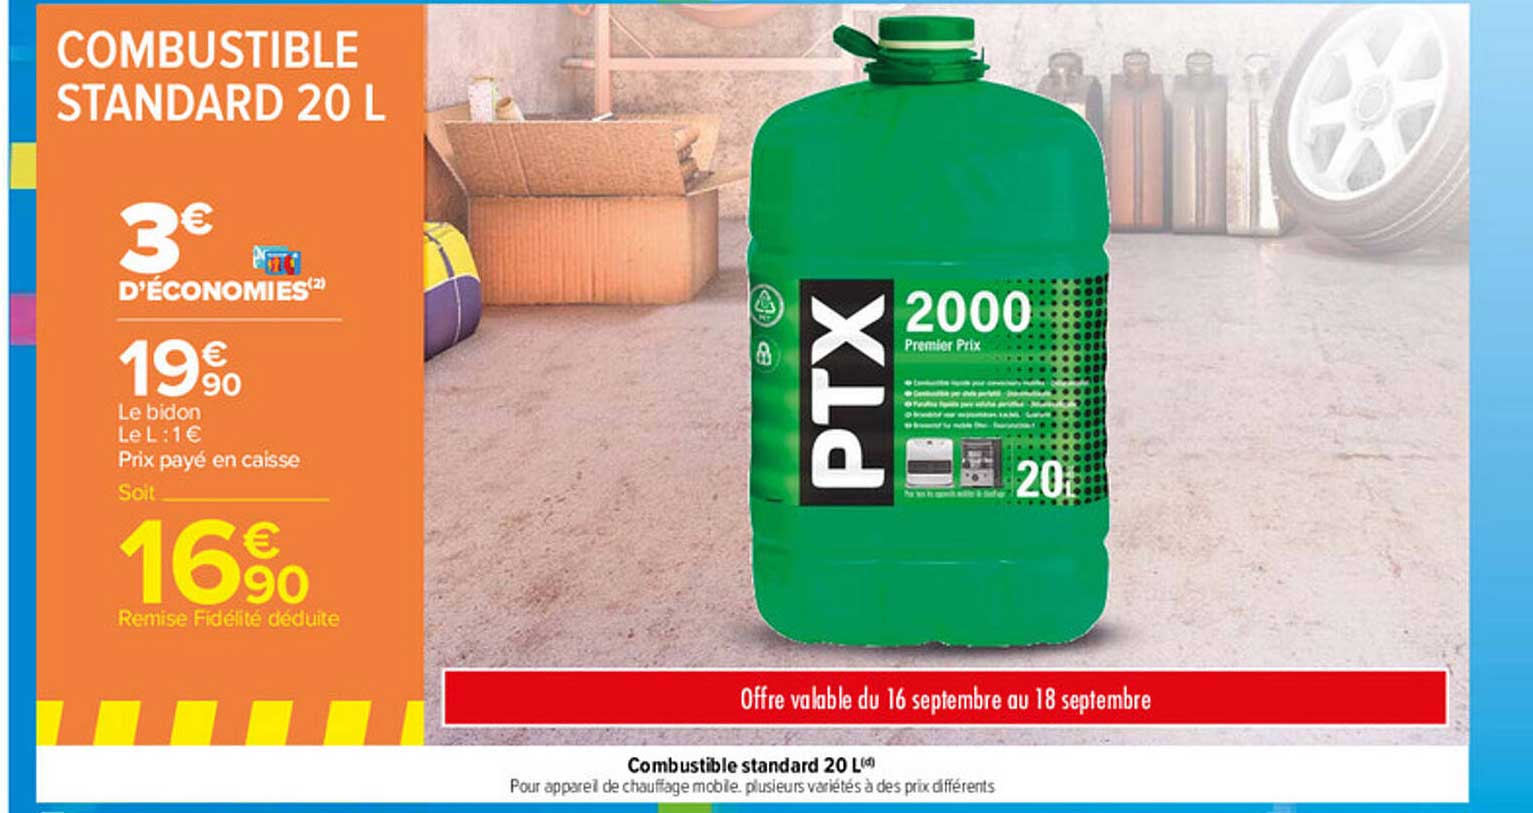 Promo Combustible Standard 20 L Ptx chez Carrefour 